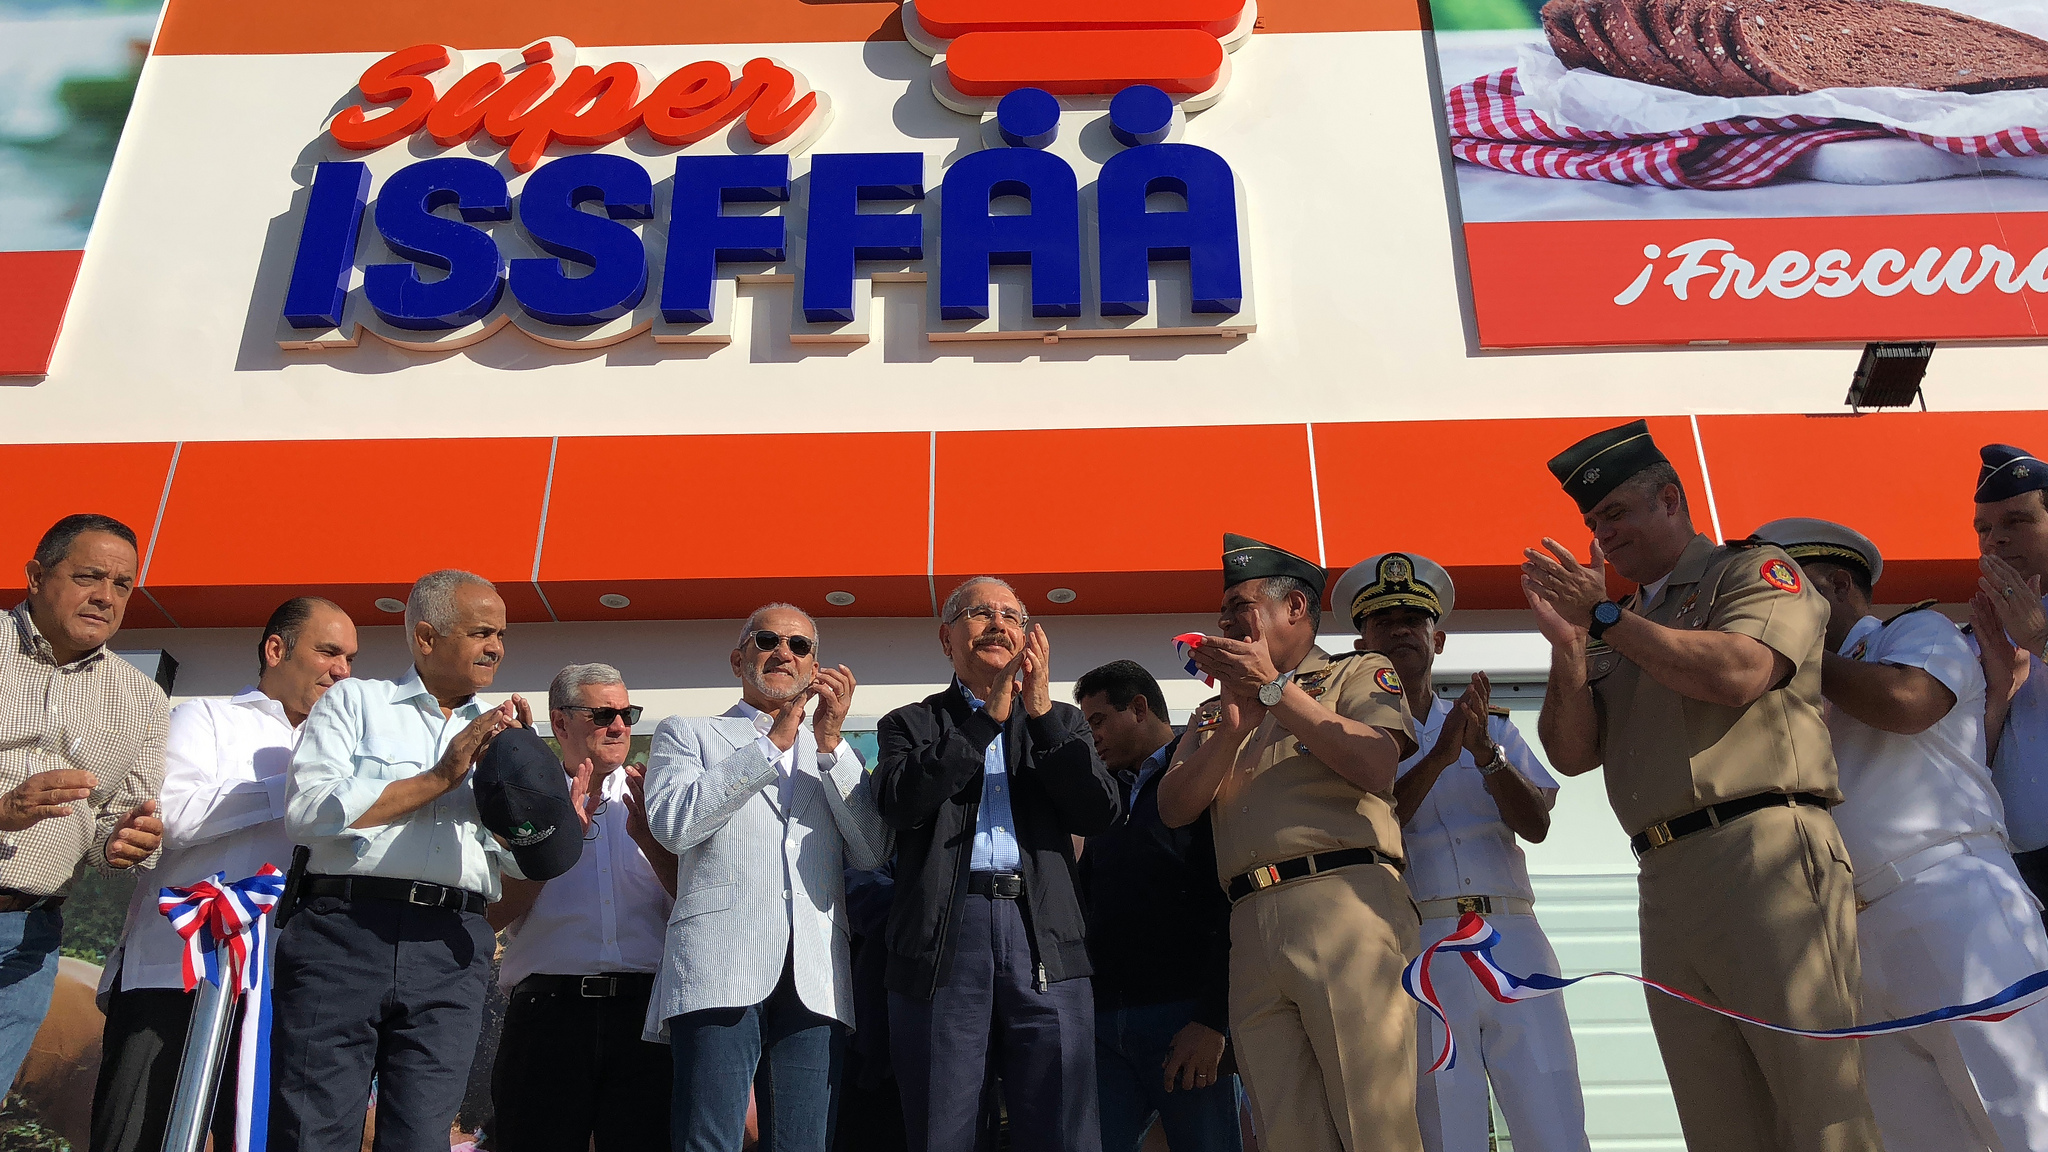 REPÚBLICA DOMINICANA: Danilo Medina entrega supermercado Súper ISSFFAA, en sede principal Ministerio de Defensa